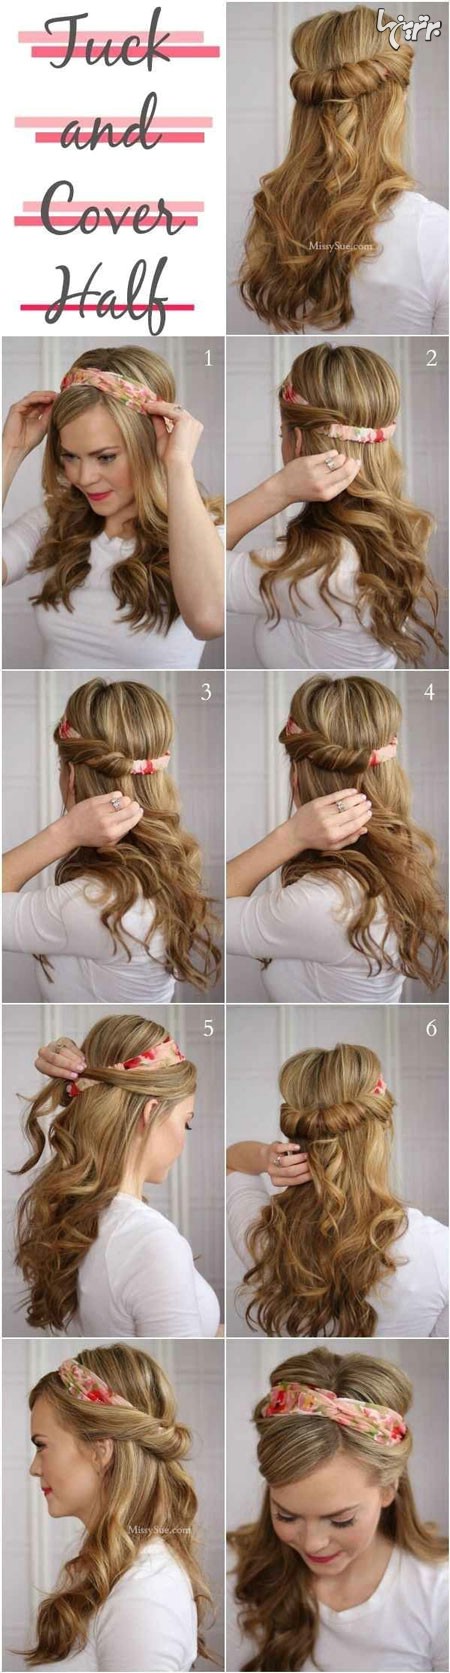 آموزش مدل های بستن مو برای خانم های تنبل (2)